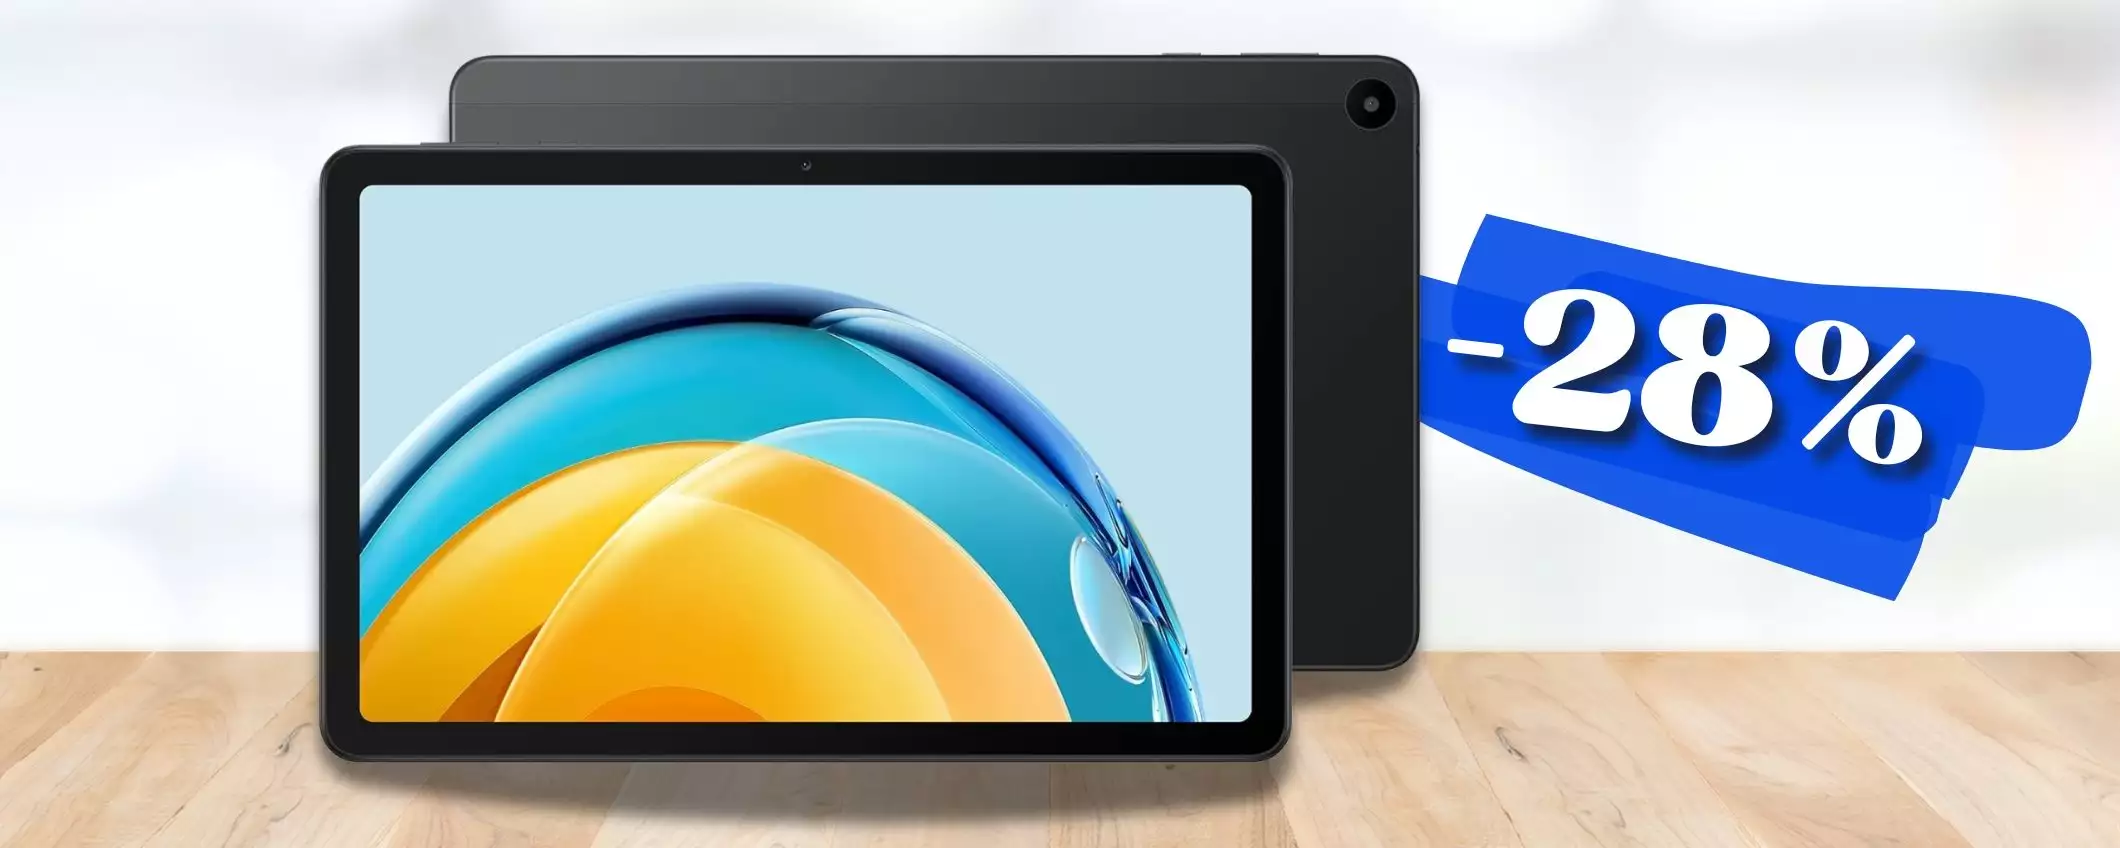 HUAWEI MatePad SE è il tablet 2K ultra SLIM e LEGGERO (-28%)